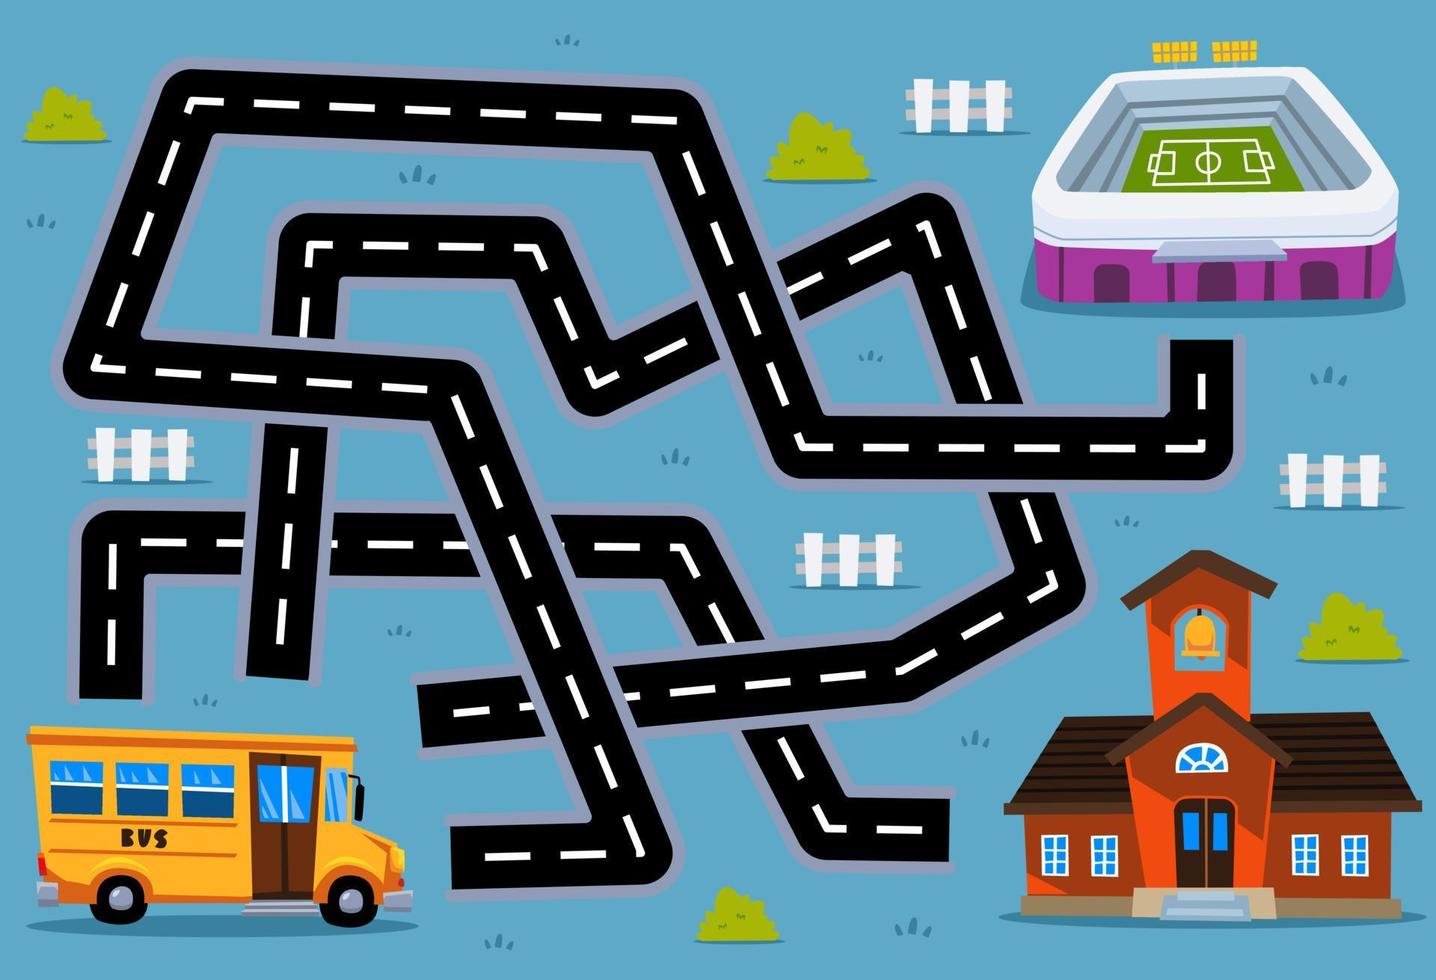 juego de rompecabezas de laberinto para niños ayuda al autobús de transporte de dibujos animados a encontrar el camino correcto a la escuela o al estadio vector